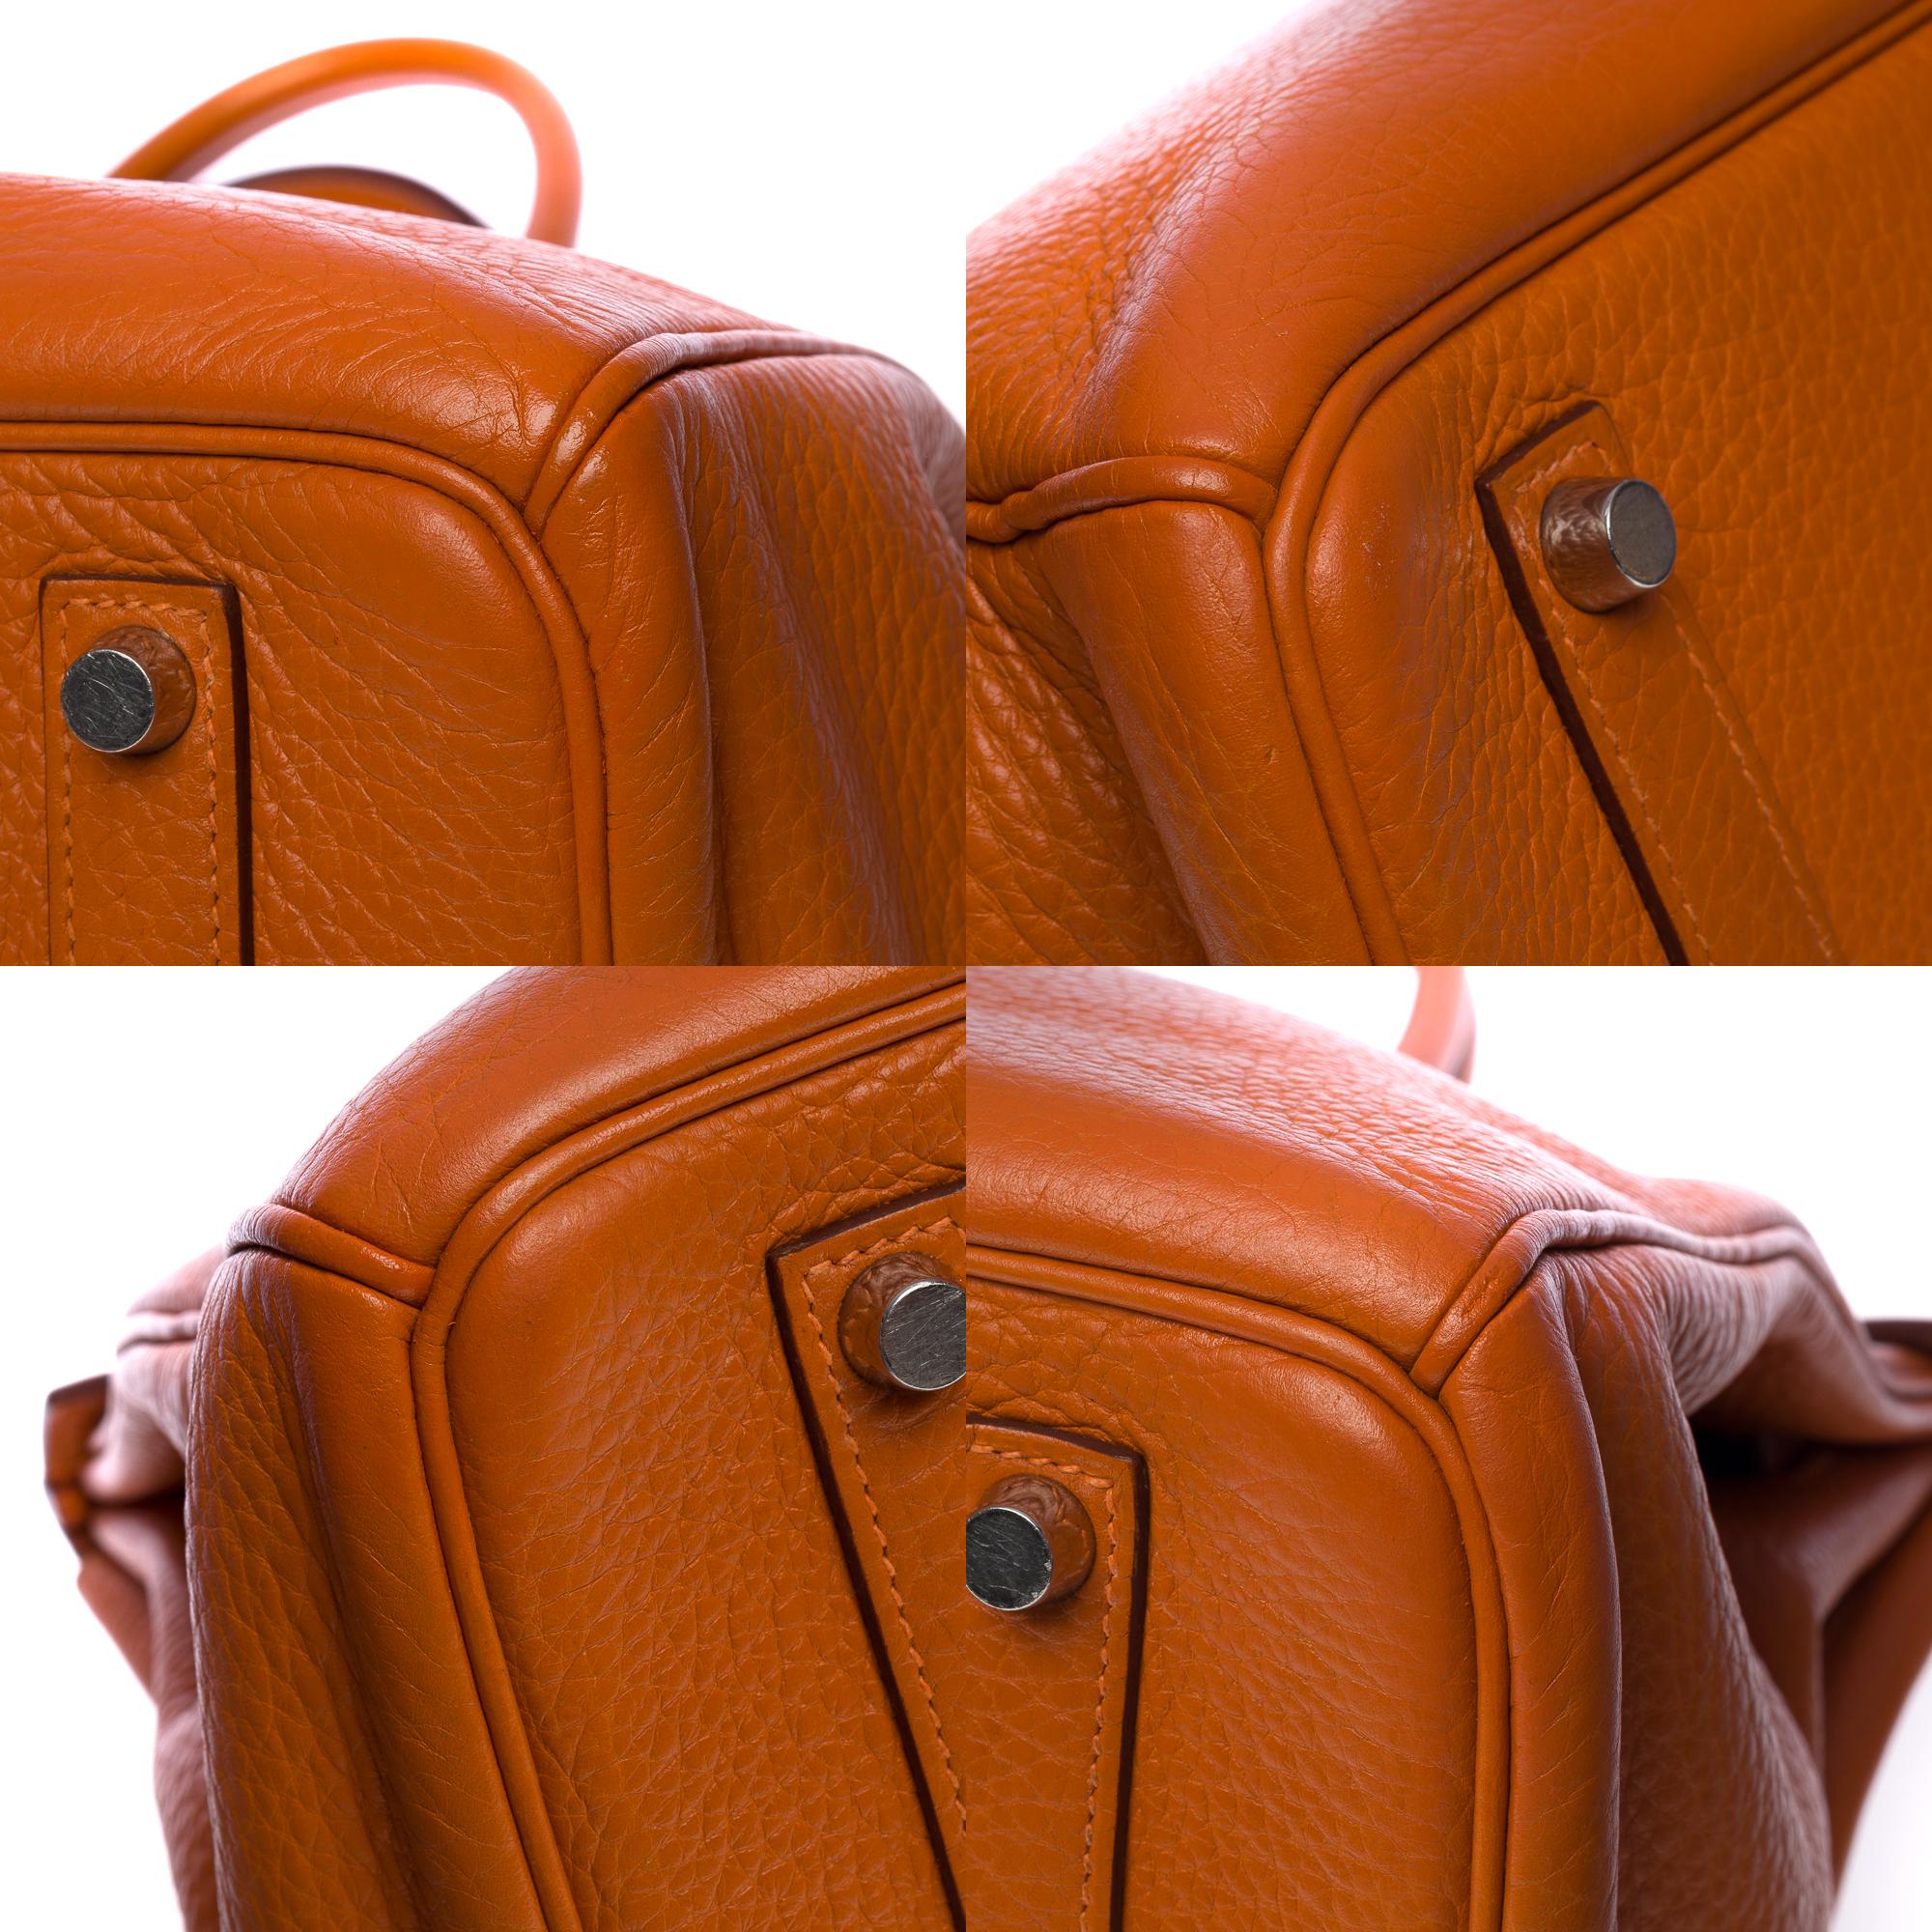 Stunning Hermès Birkin 35 handbag in Orange Togo leather, SHW 5